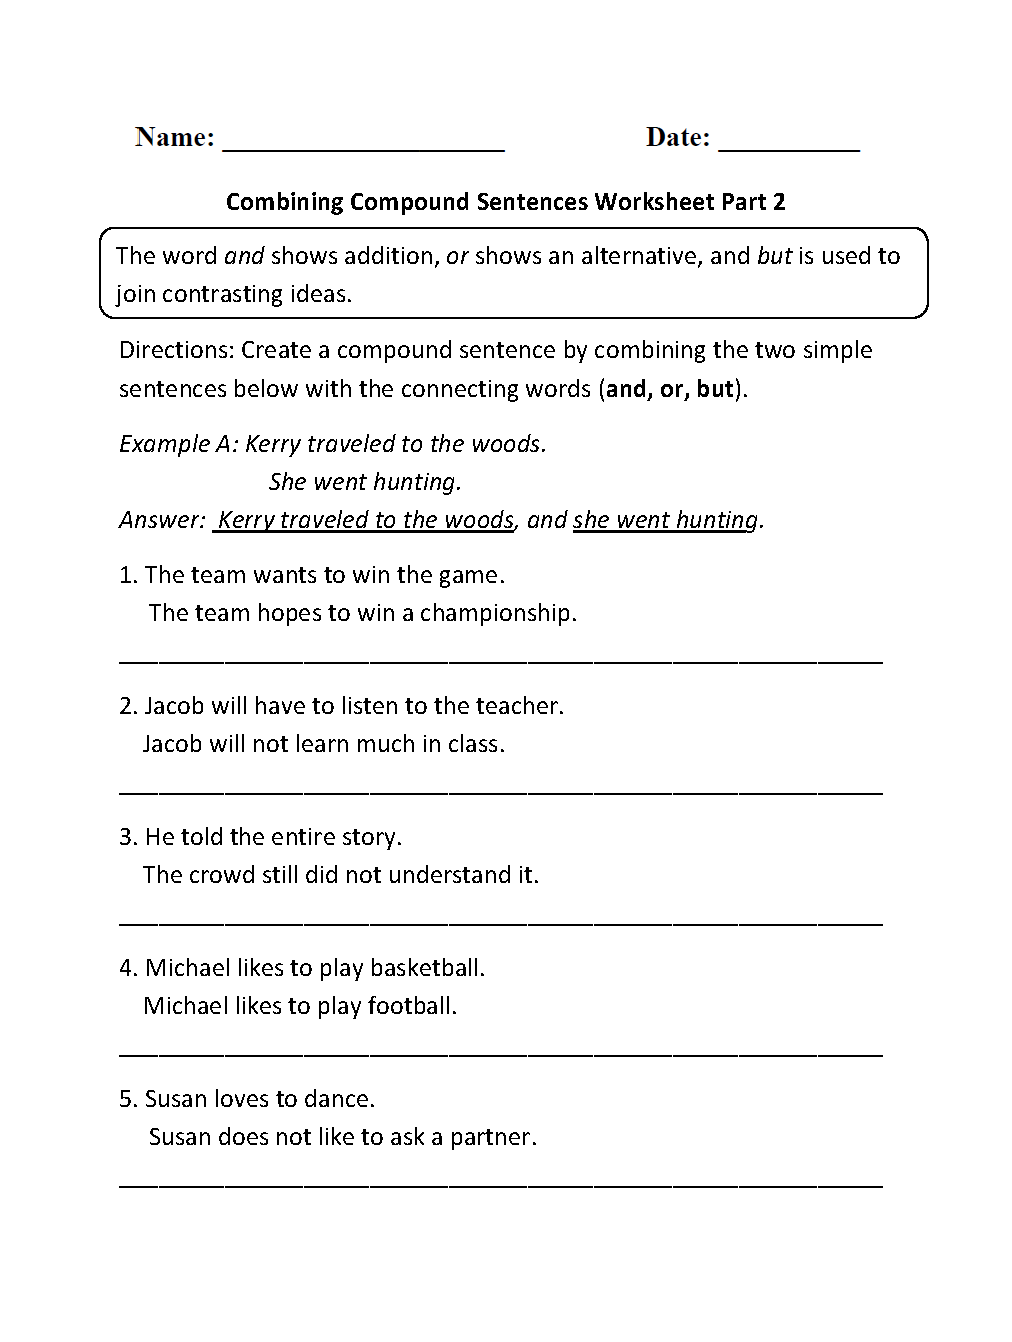 Combining Compound Sentences Worksheet Part 2